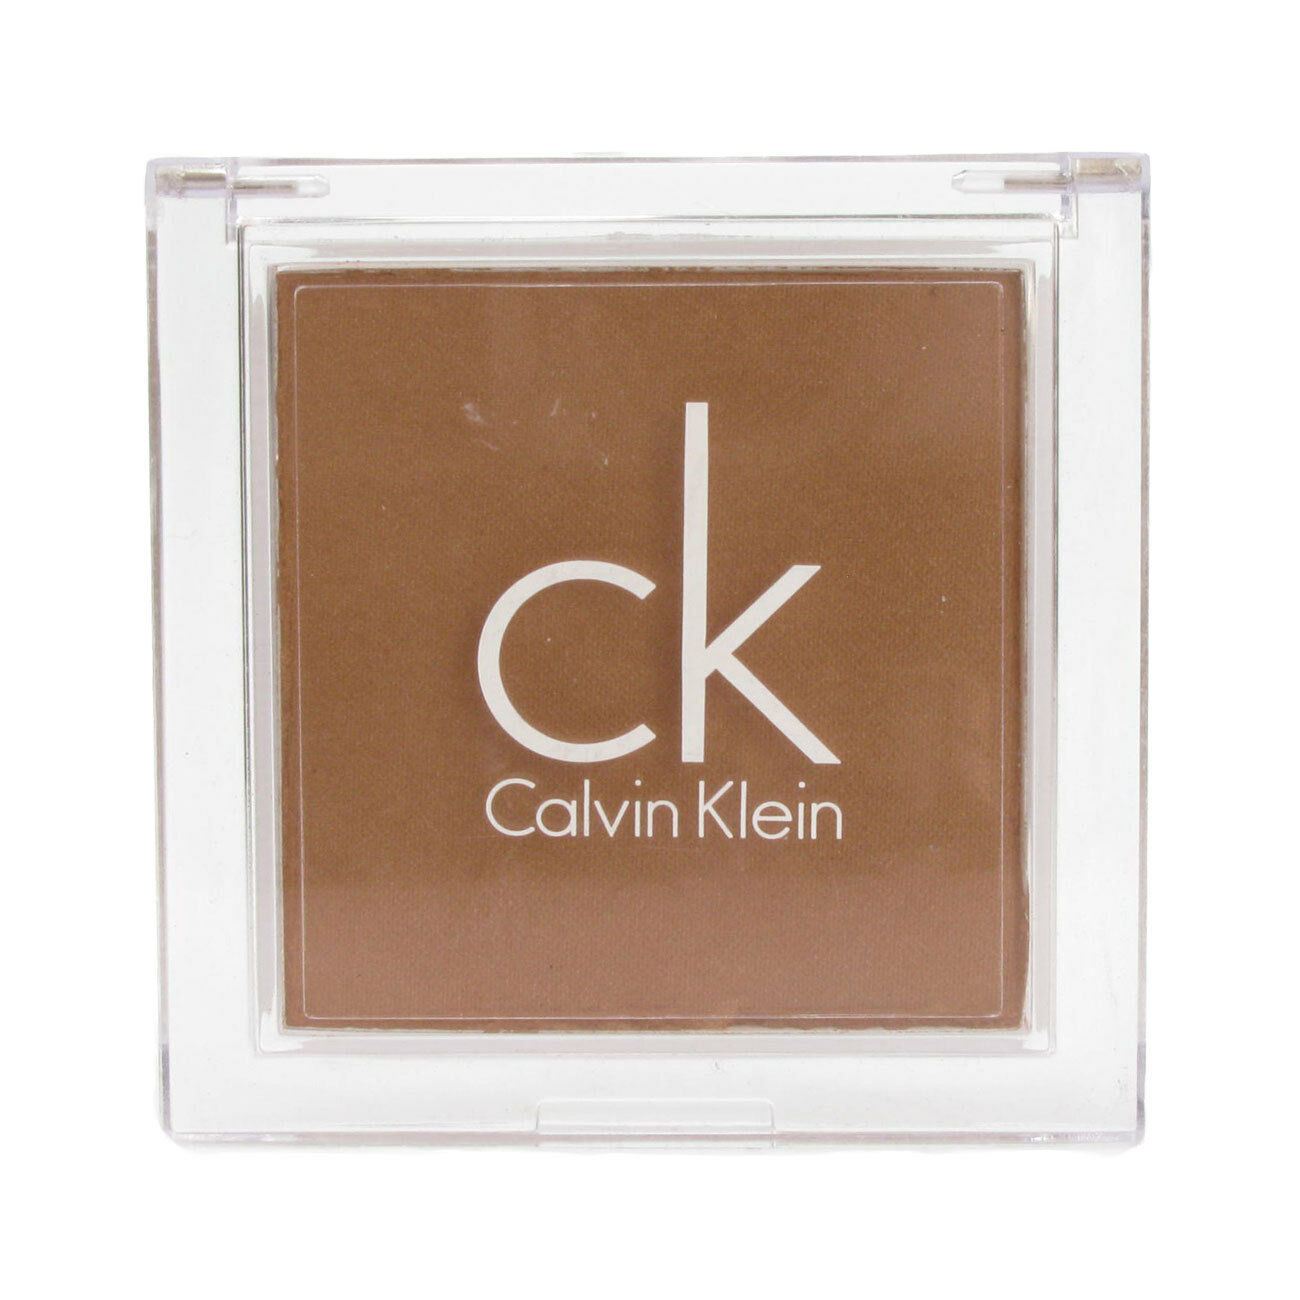 Calvin Klein Bronzing Powder *Choose Your Shade* - $10.45